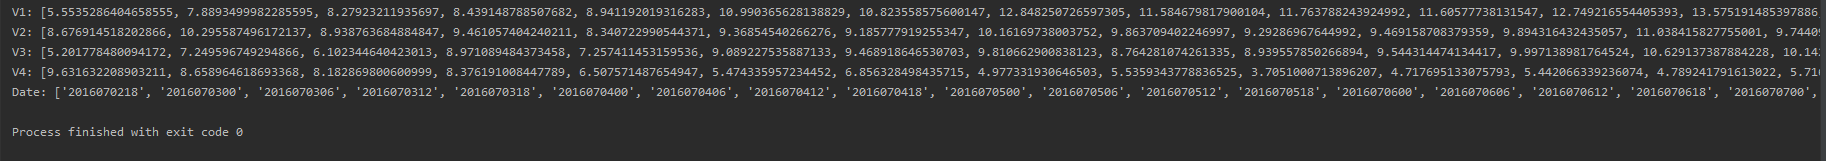 python使用matplotlib绘制图片时x轴的刻度处理